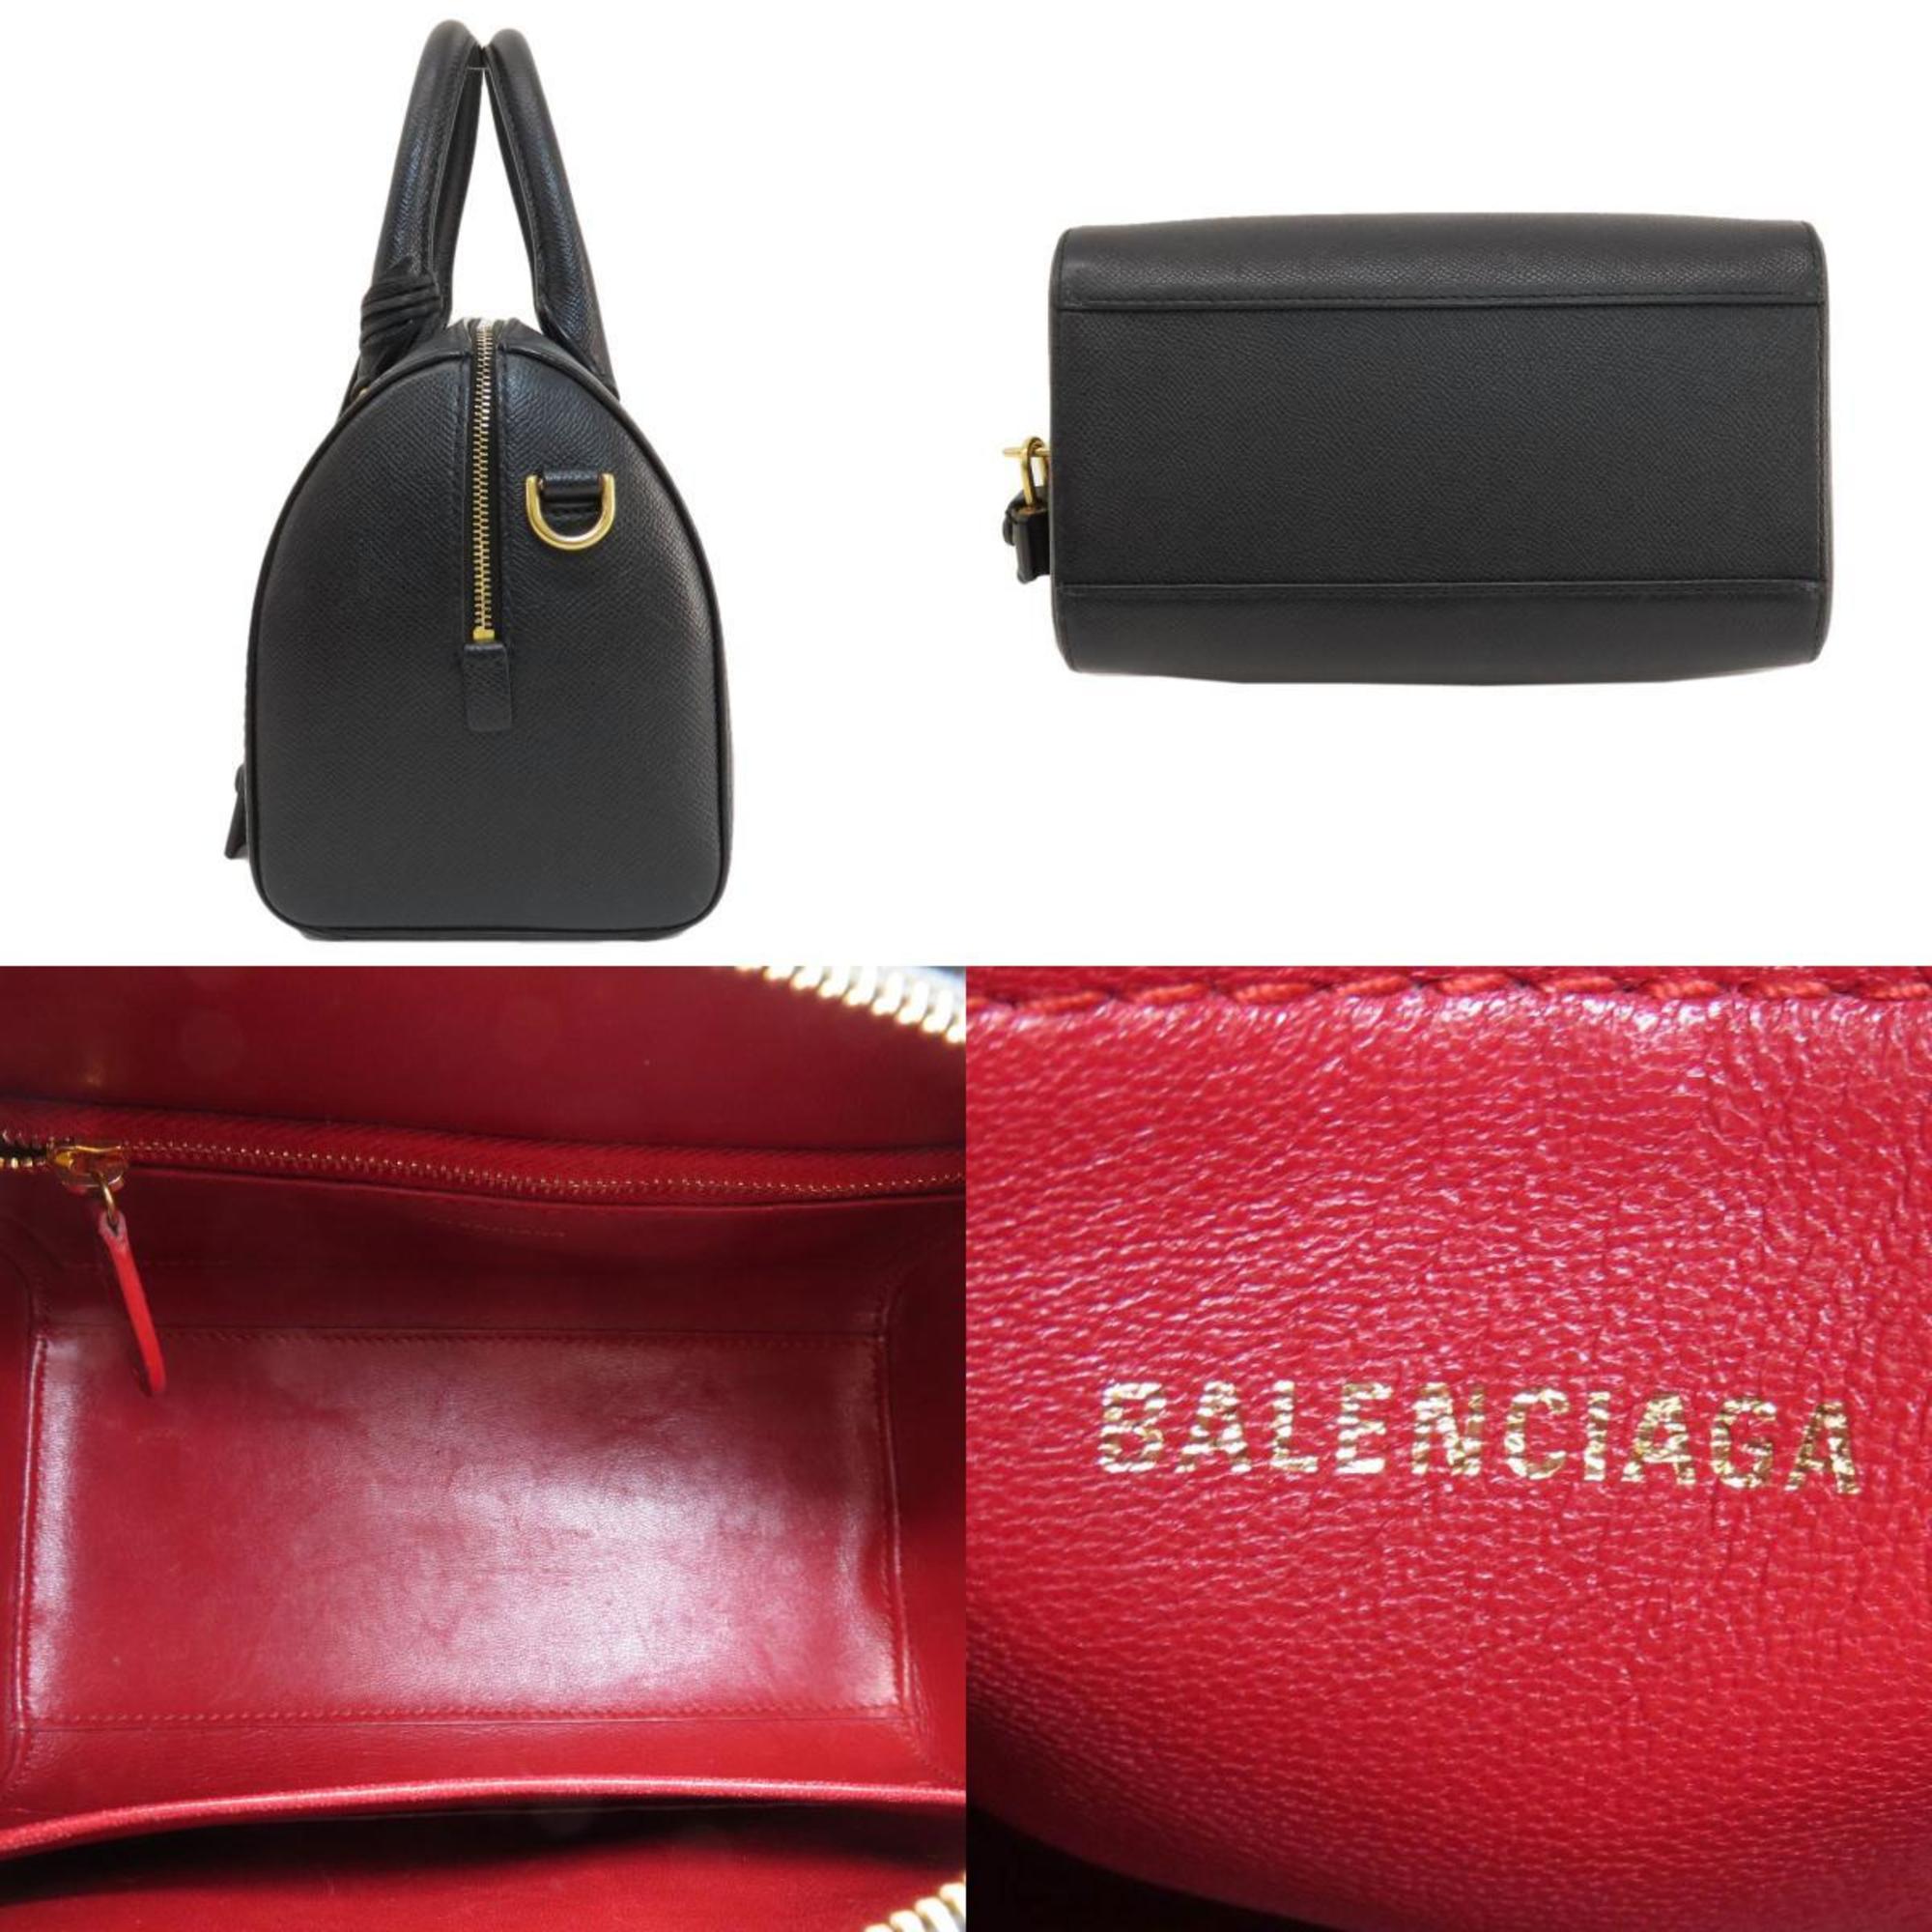 Balenciaga handbag leather women